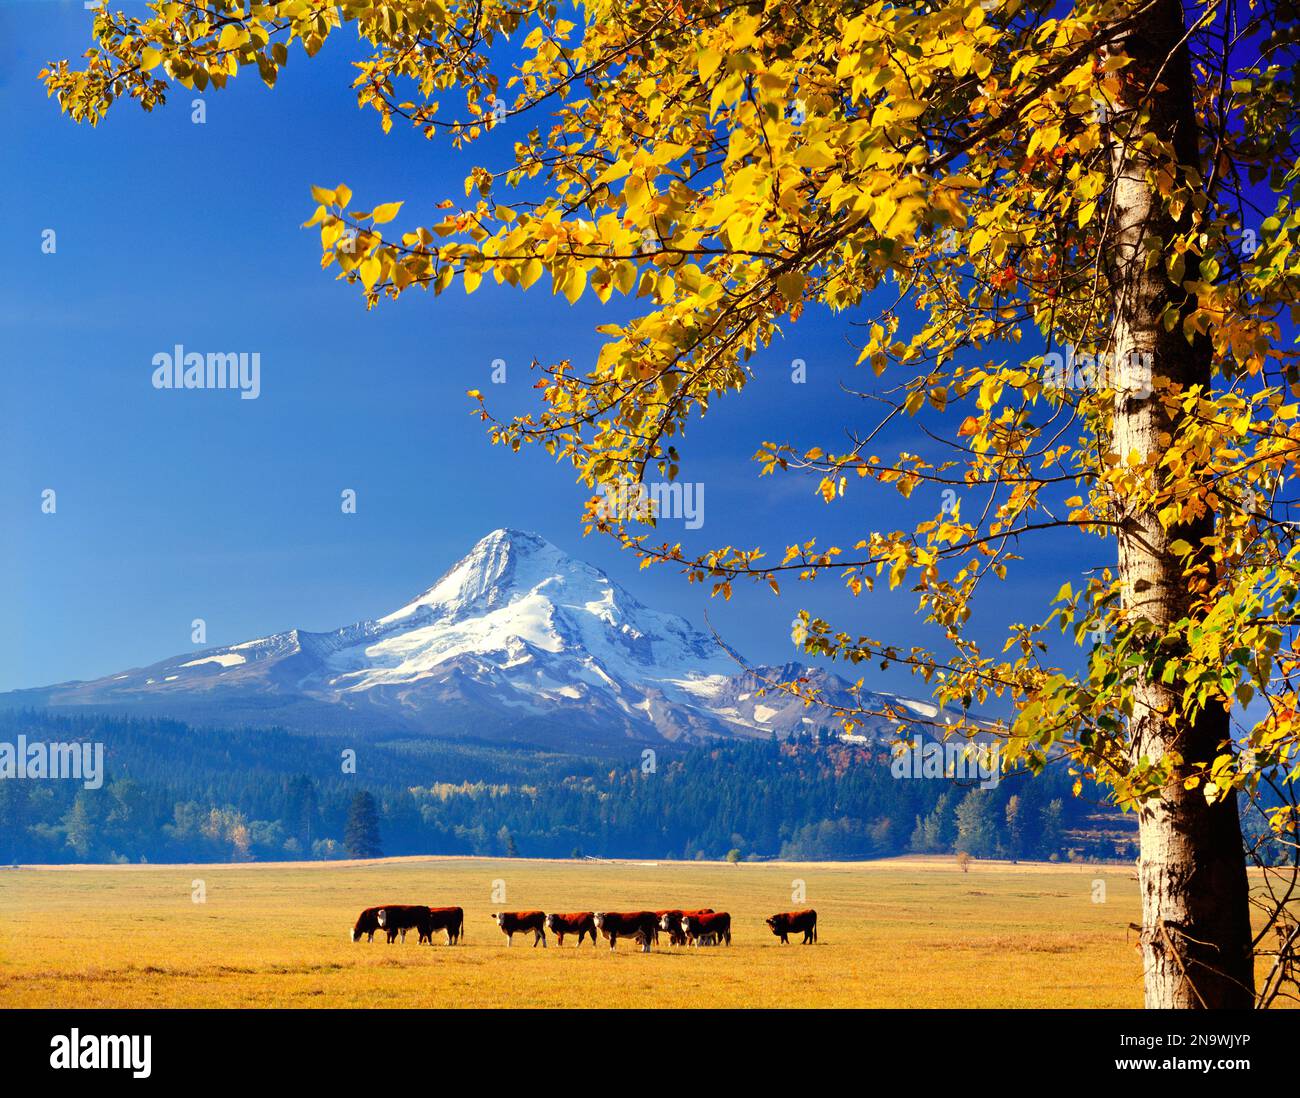 Vaches paissant près du mont Hood avec un feuillage coloré en automne dans la vallée ; Oregon, États-Unis d'Amérique Banque D'Images